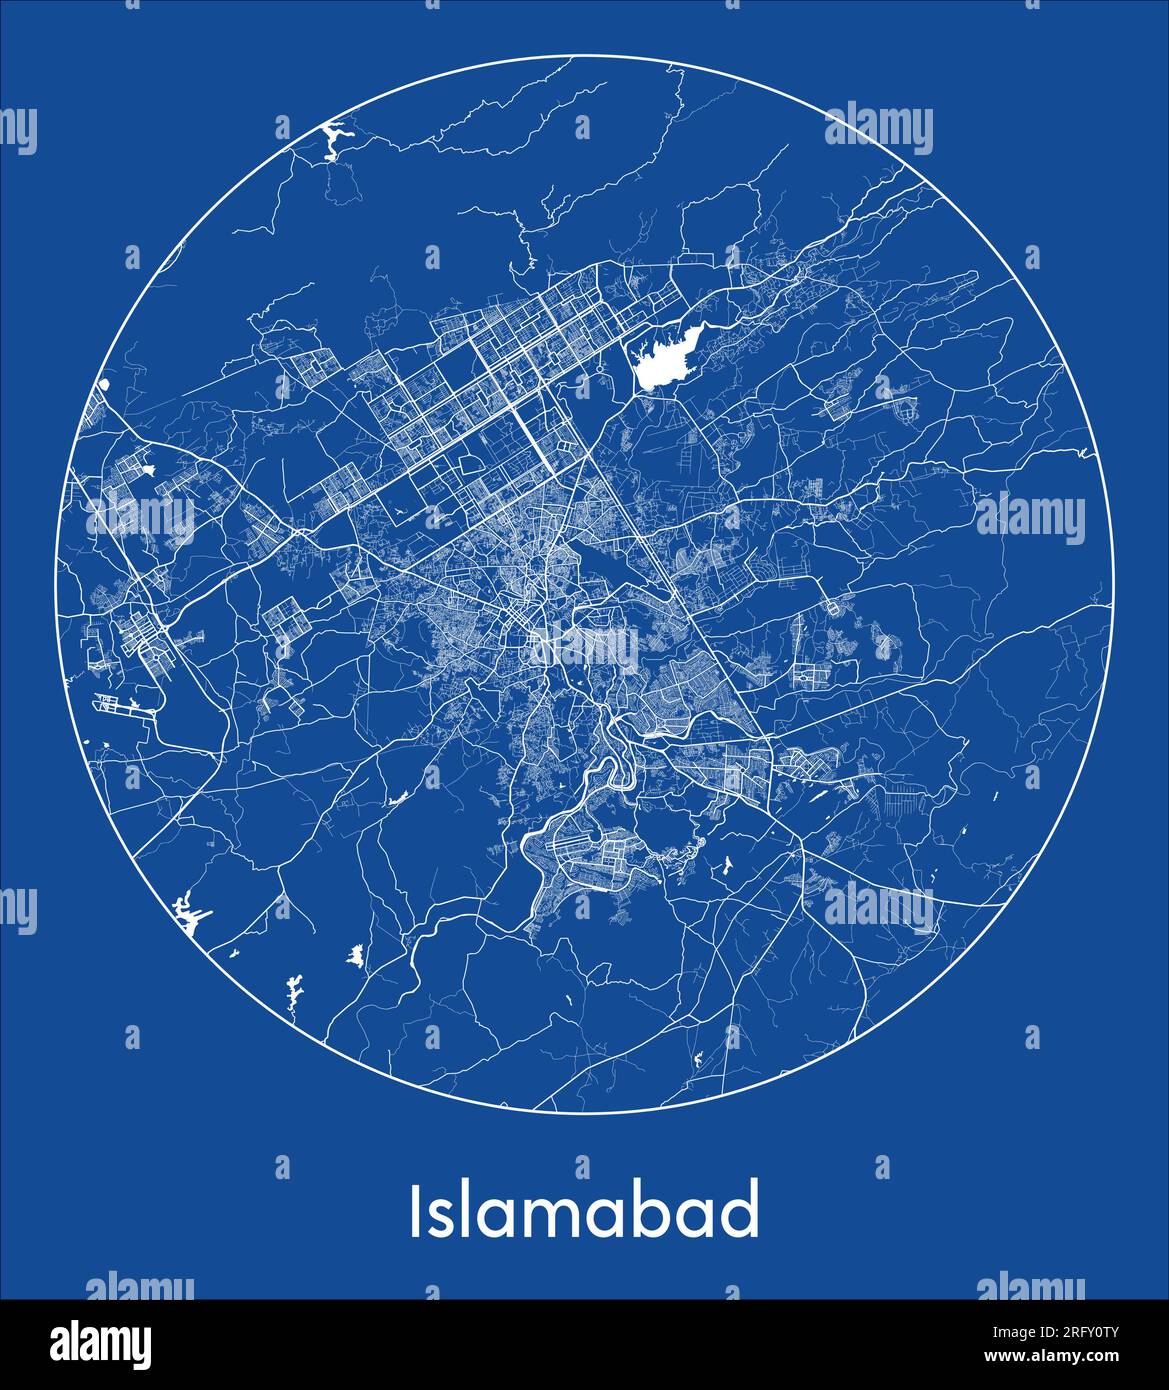 Plan de la ville Islamabad Pakistan Asie bleu imprimer rond cercle illustration vectorielle Illustration de Vecteur